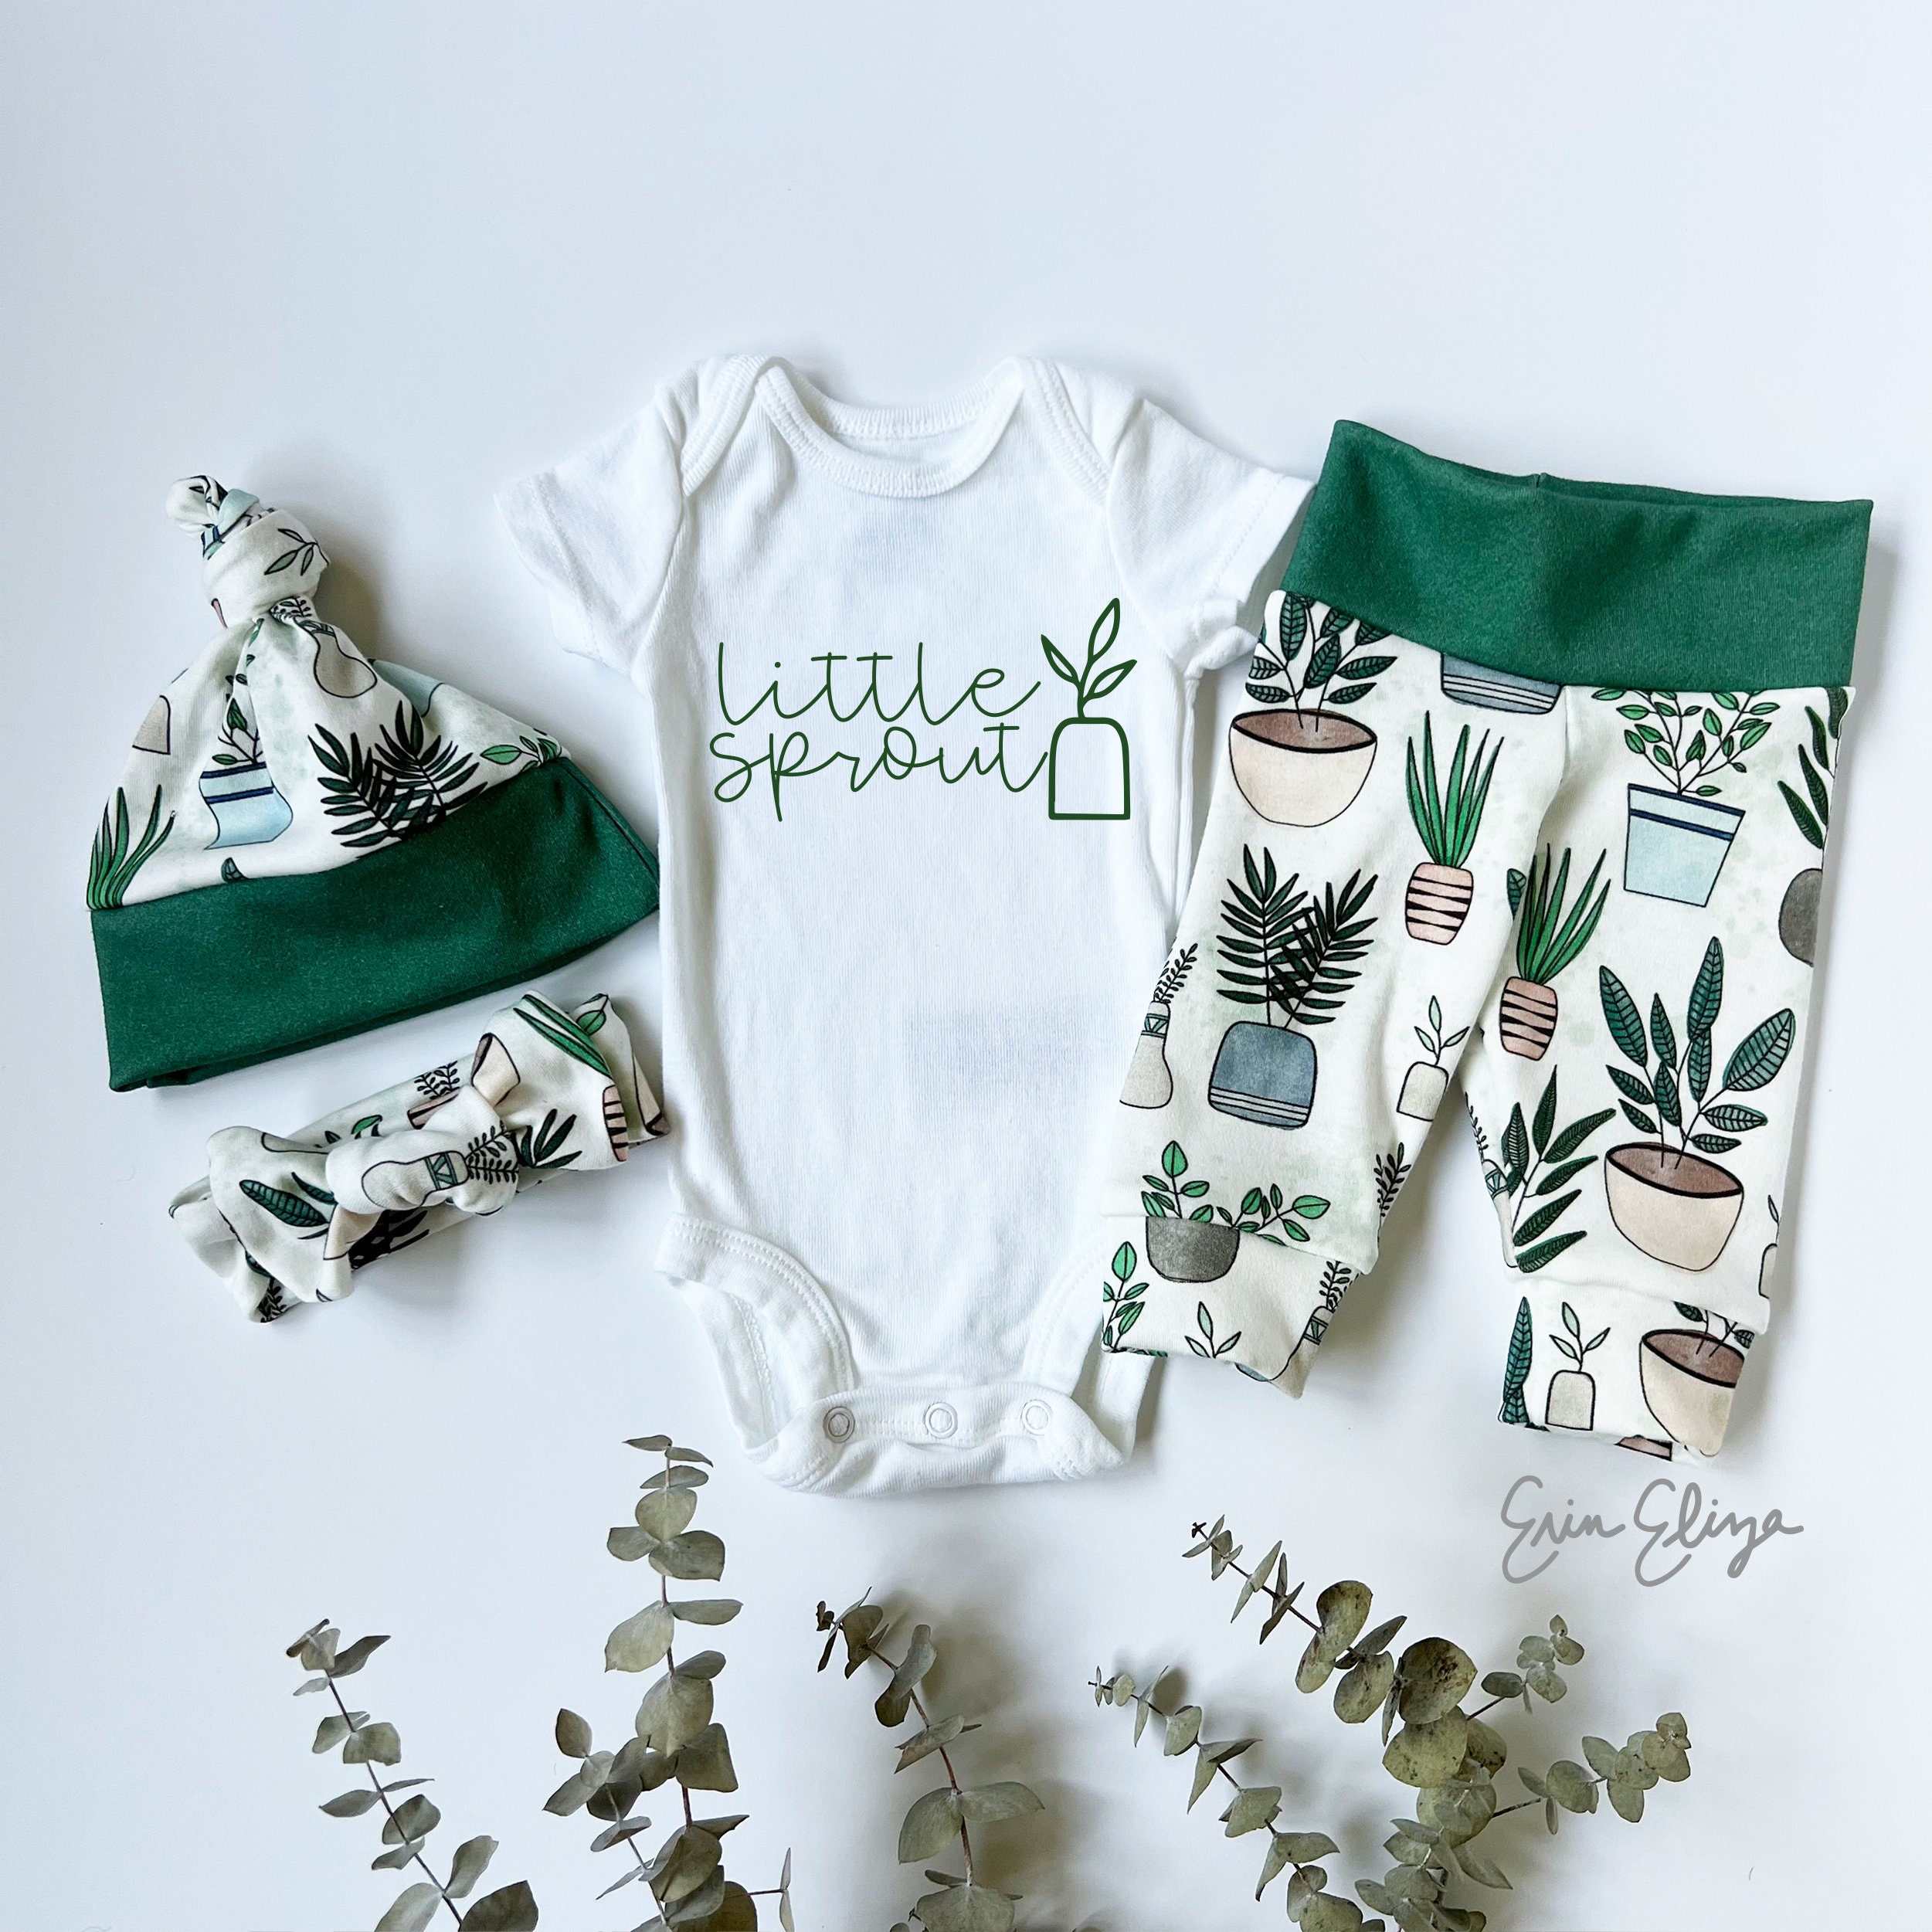 Petite pousse de bébé, tenue végétale neutre pour bébé, cadeaux